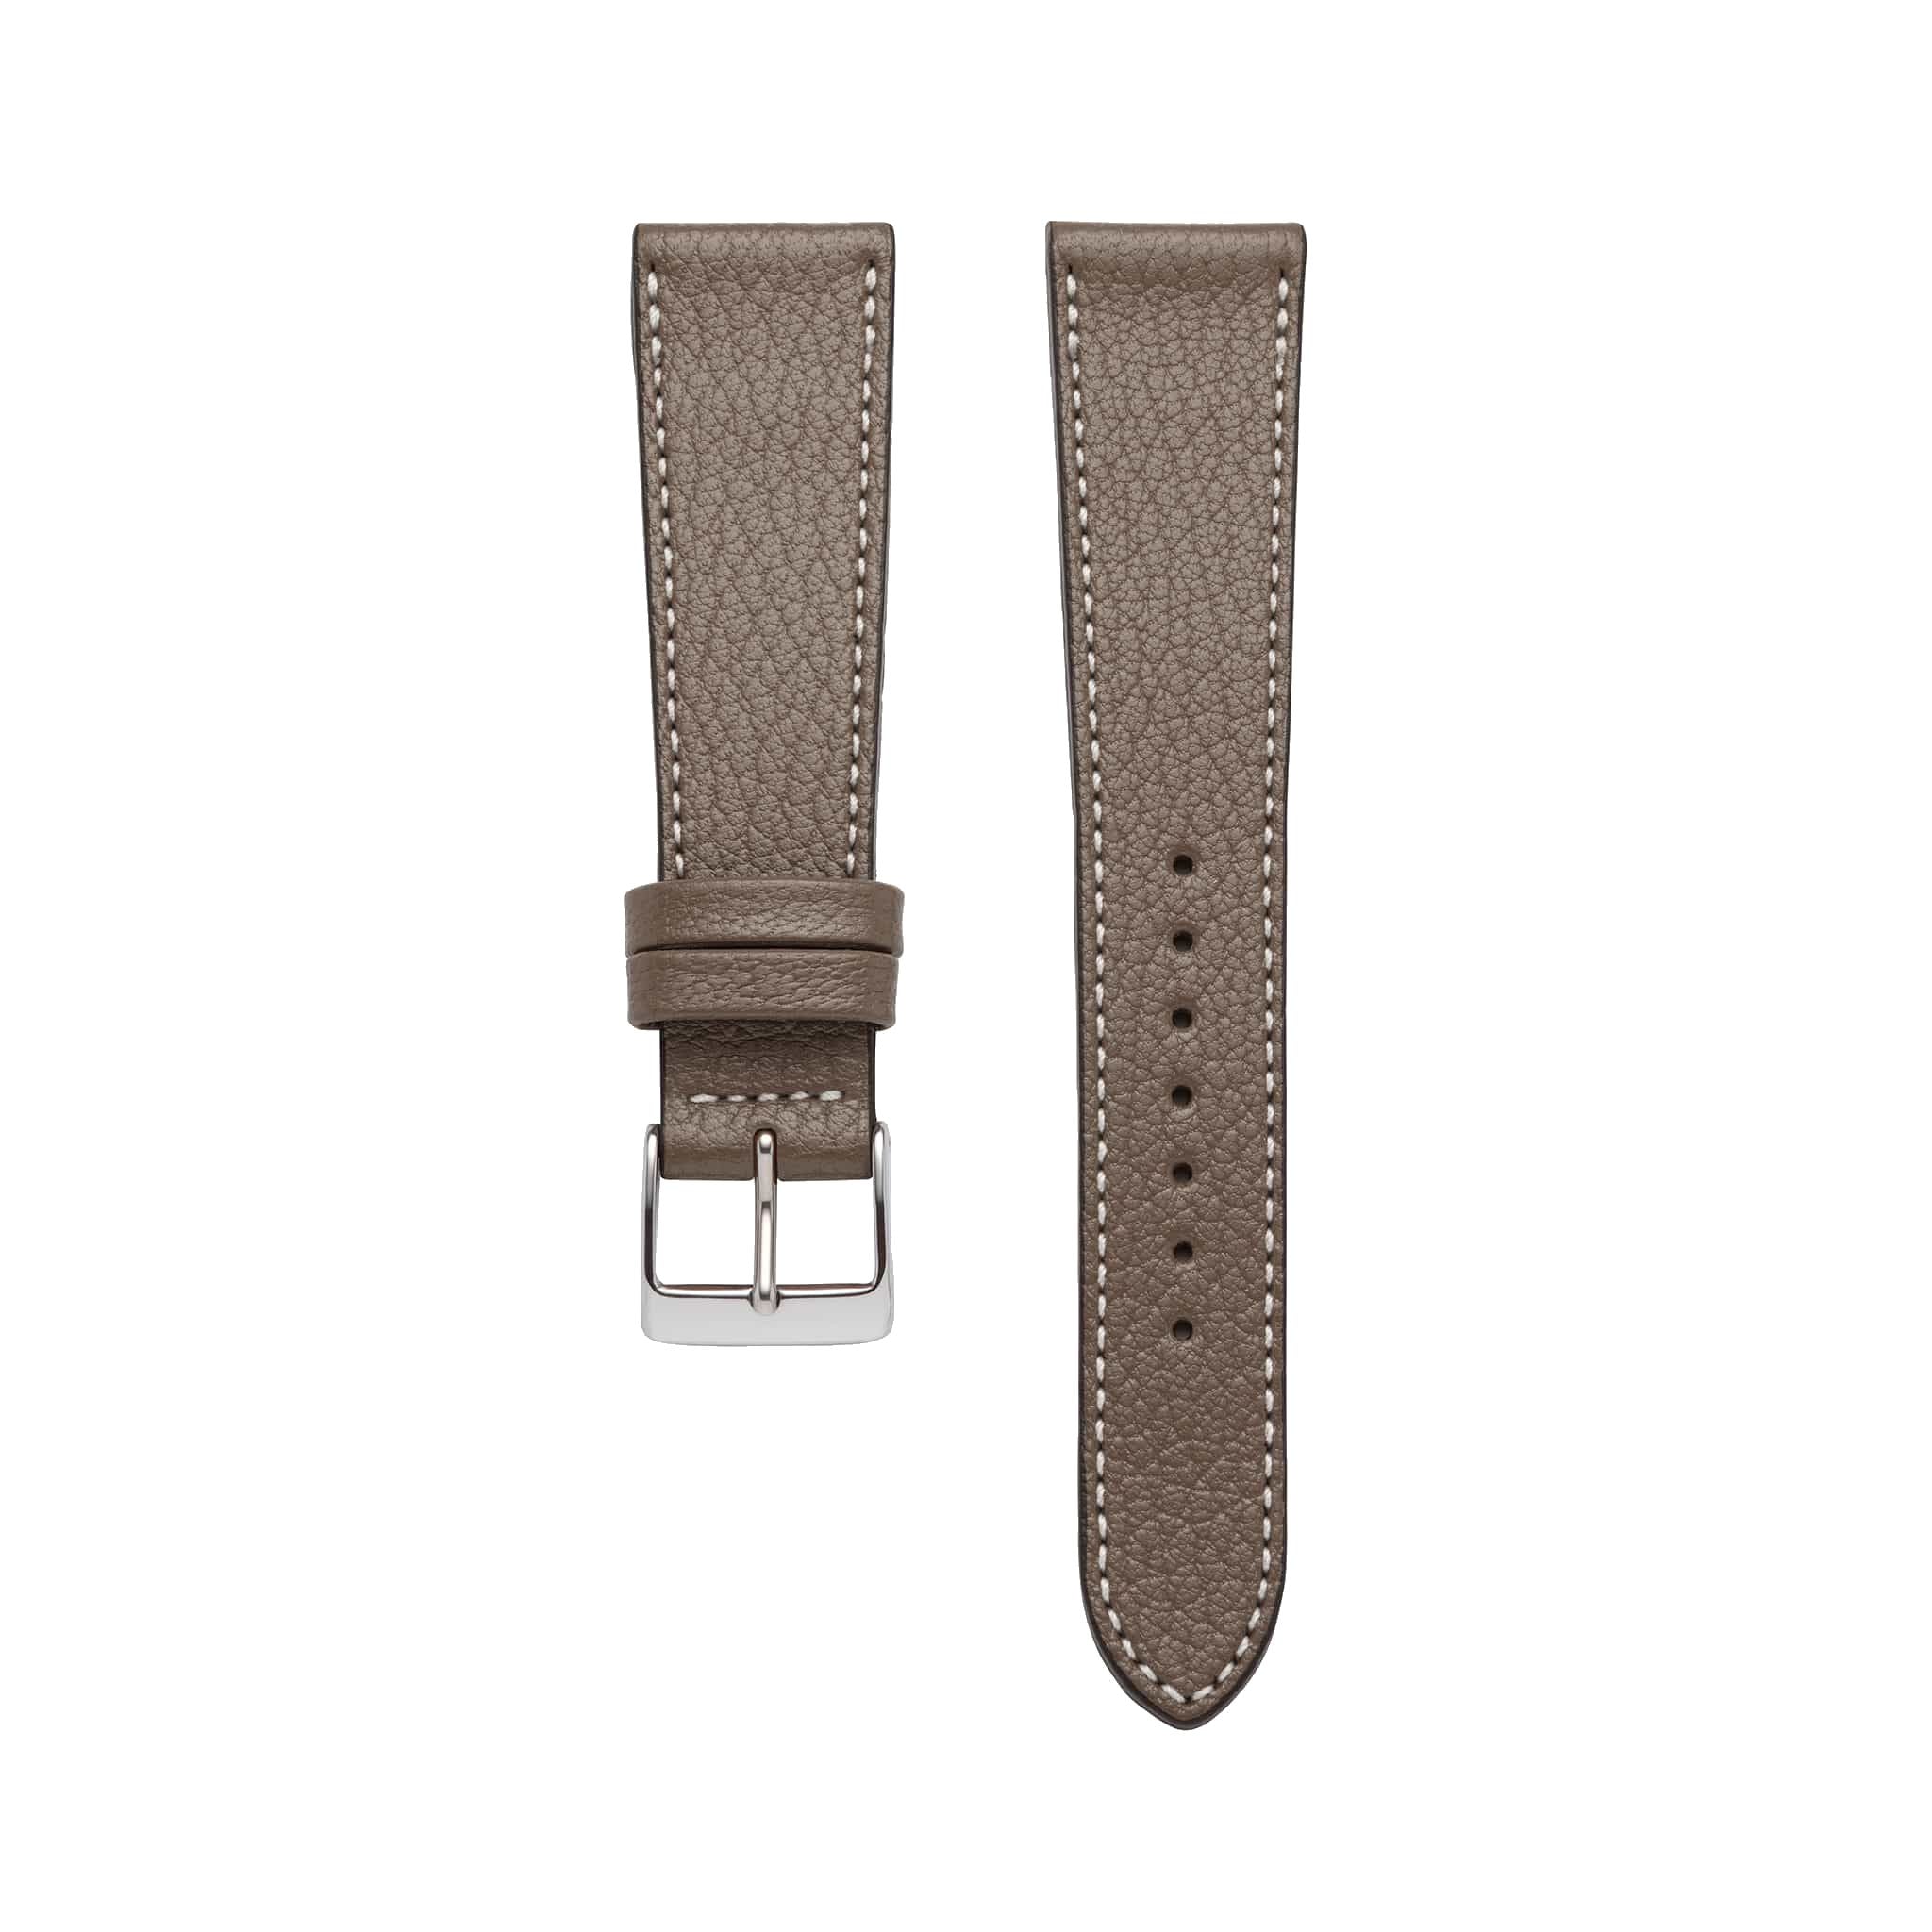 Goat Leather Slim | Armband aus Ziegenleder kompatibel mit Apple Watch-Taupe-BerlinBravo